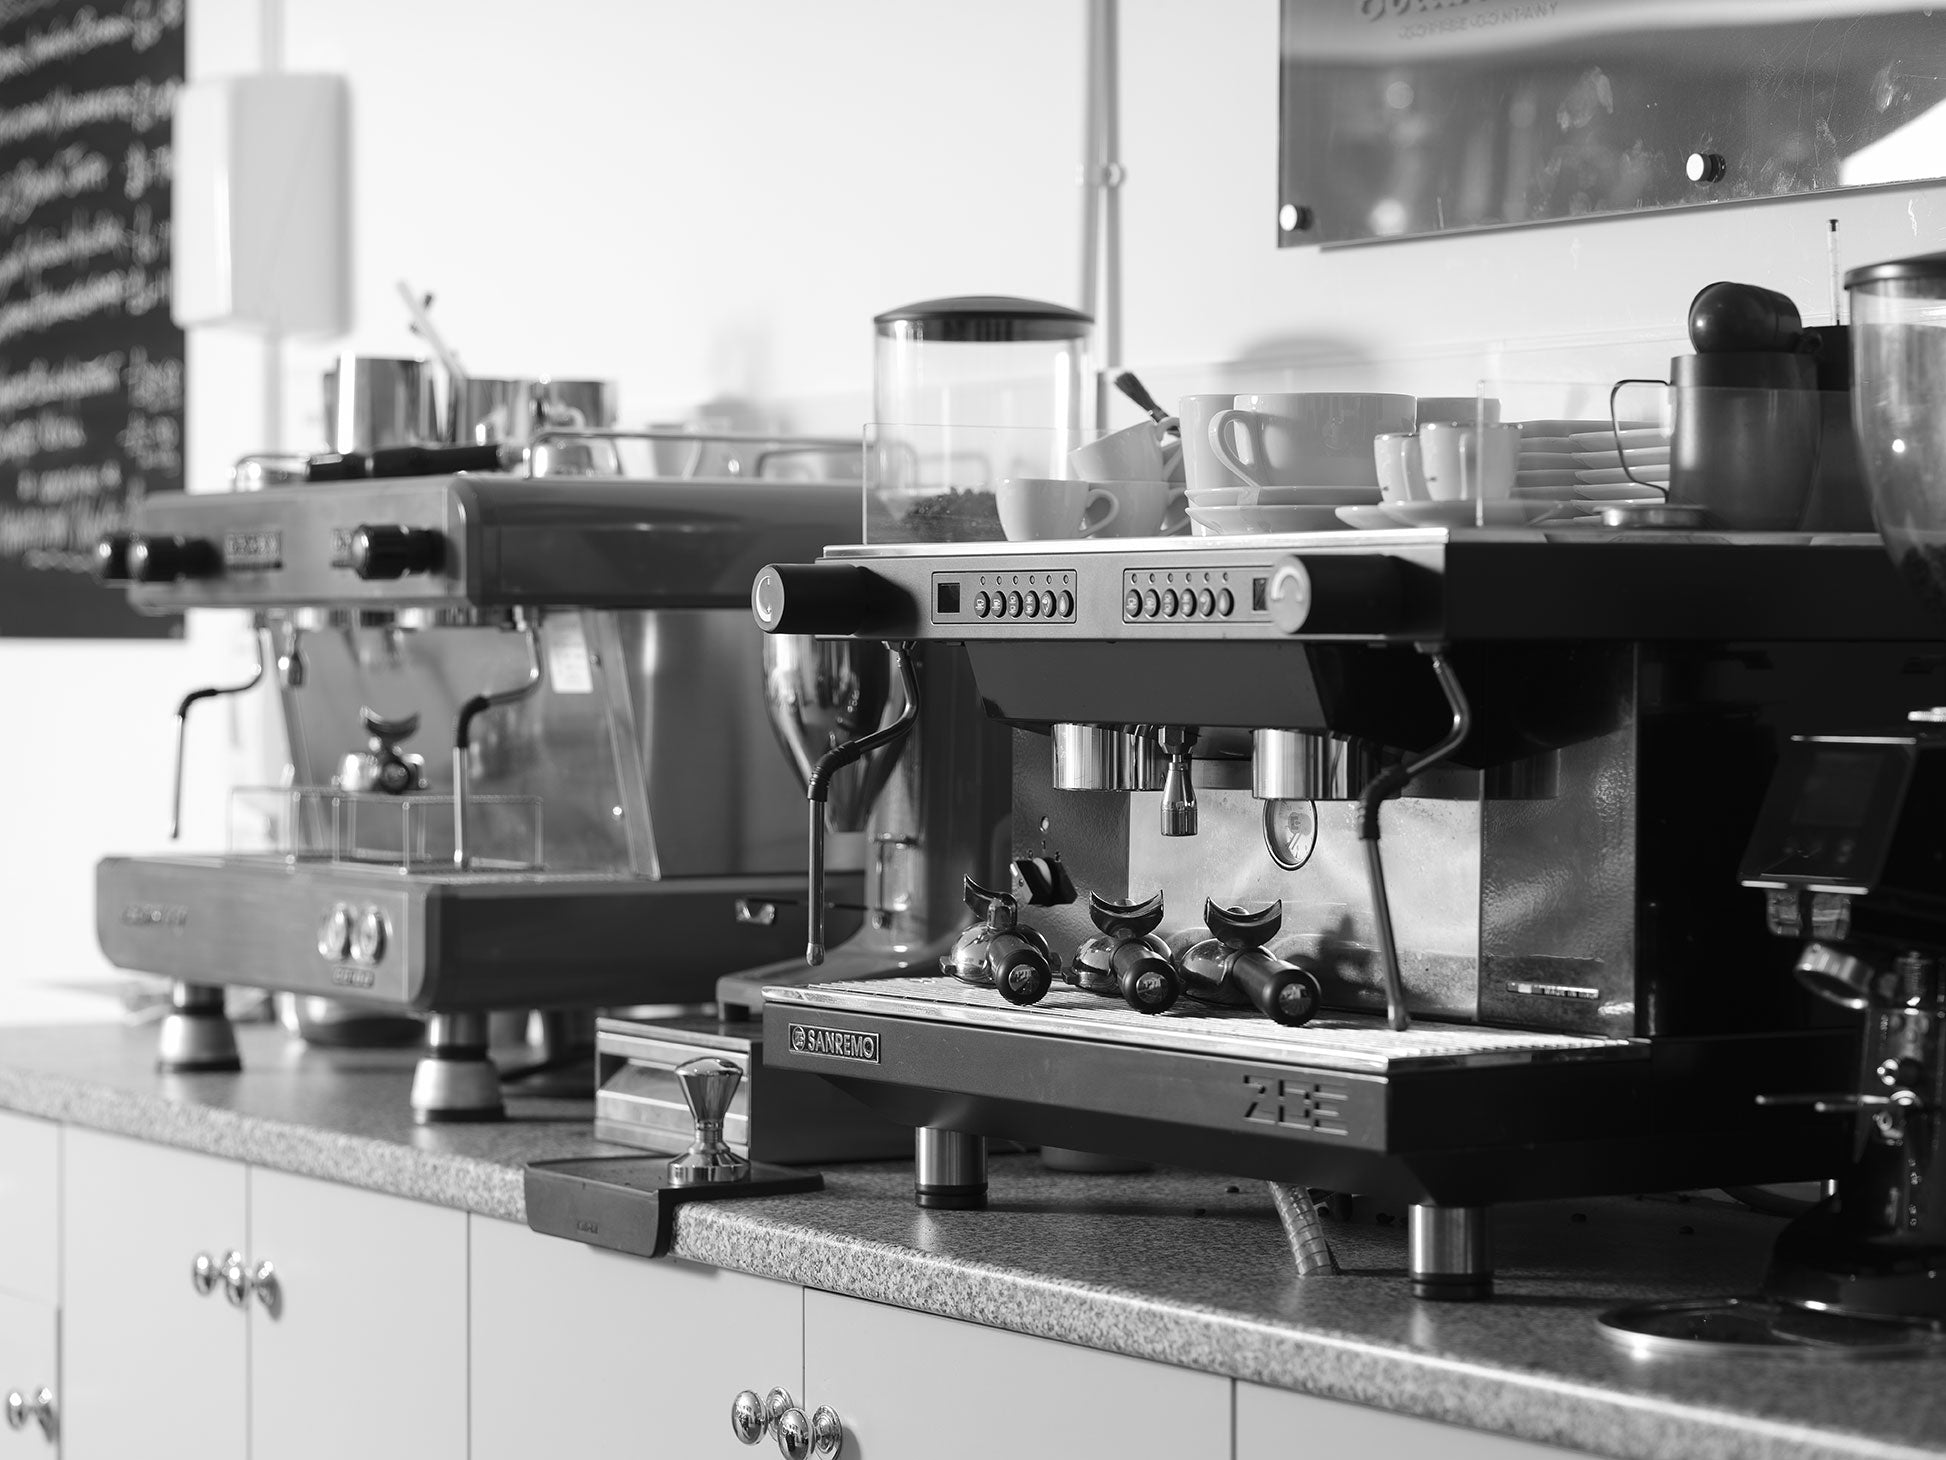 Conti Espresso machines for Barista Training in our demo room 